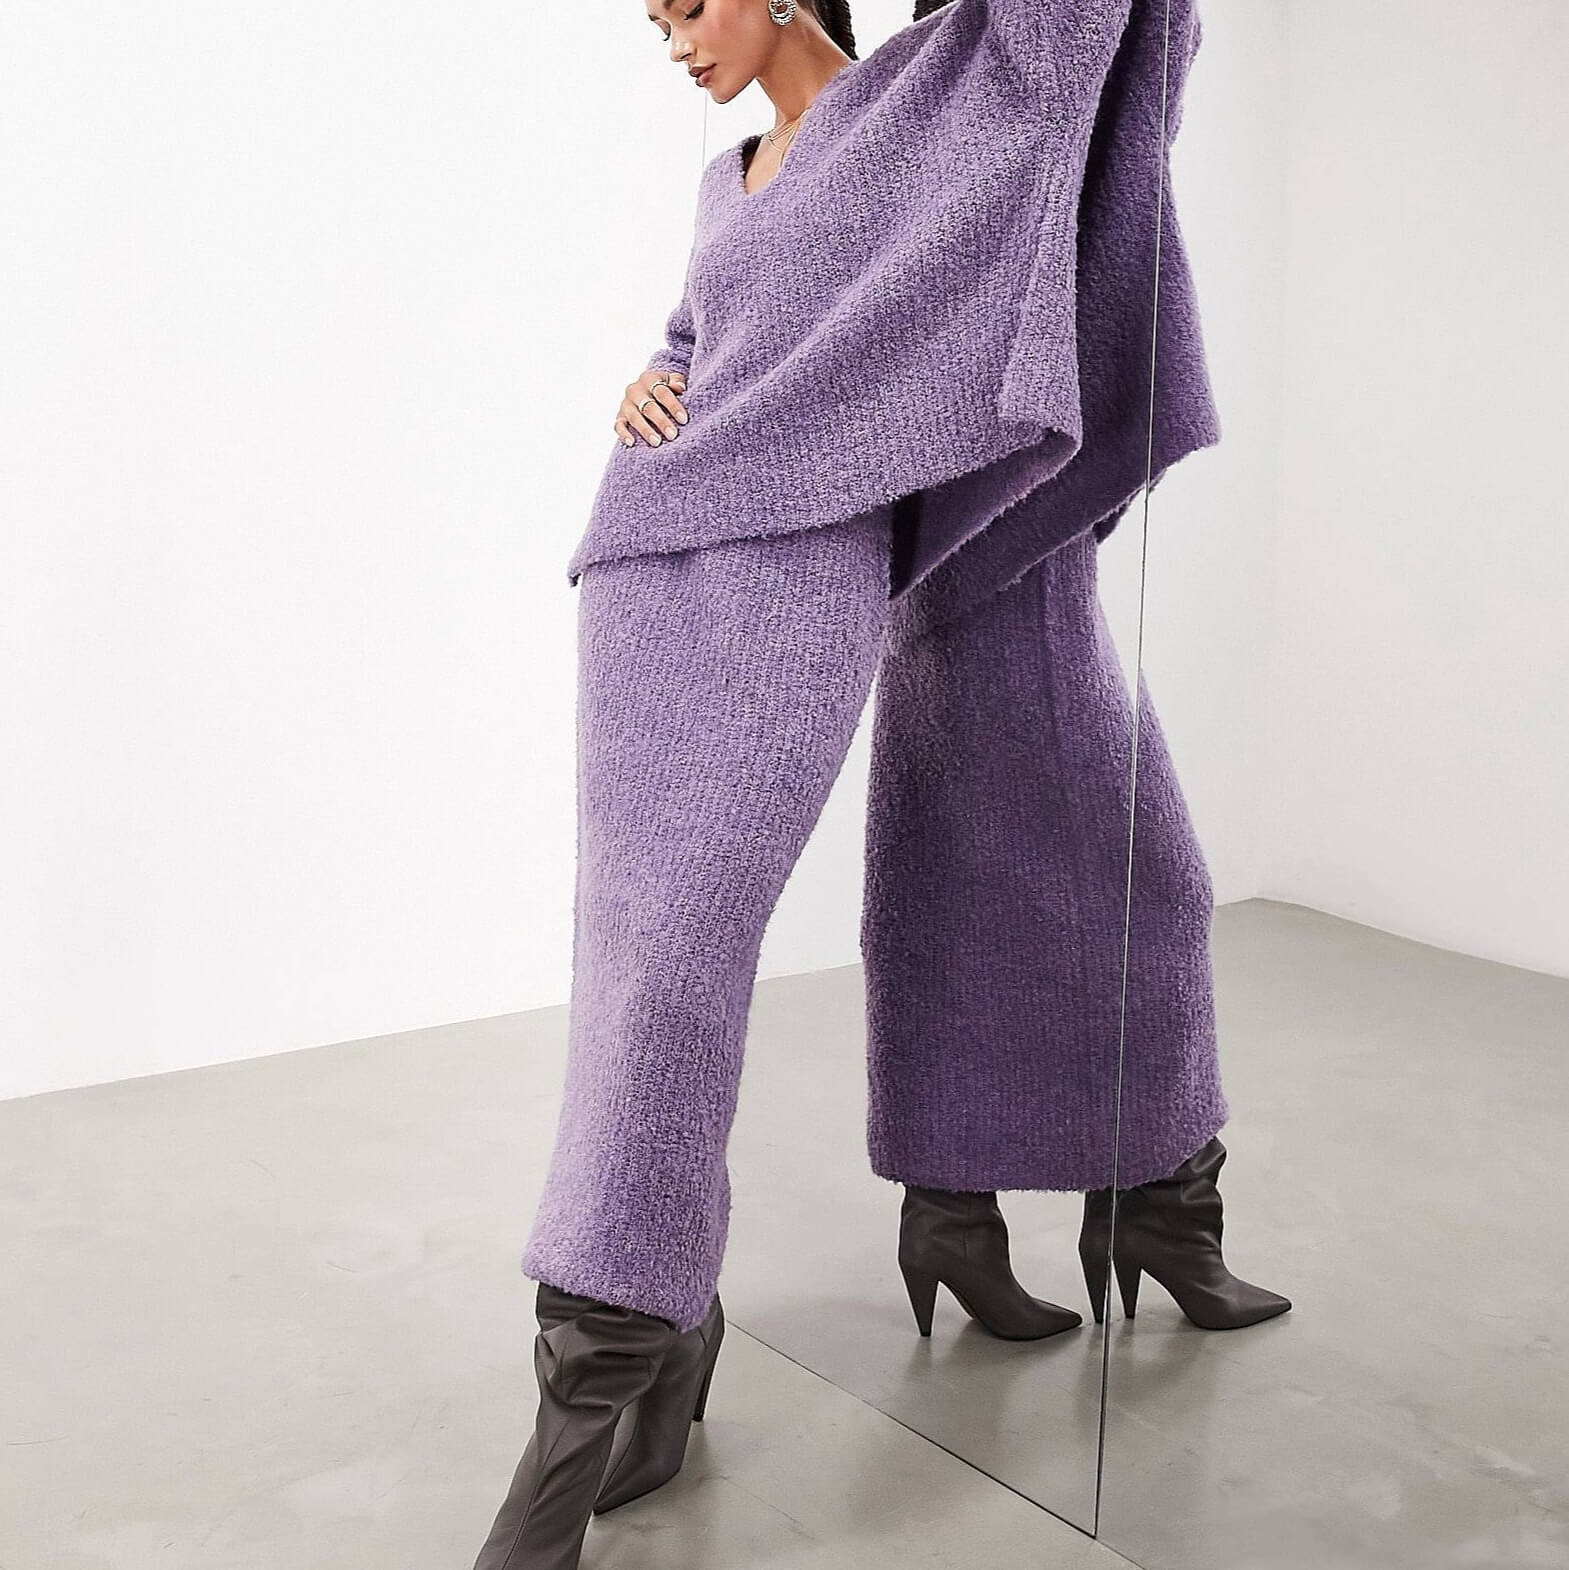 Юбка миди Asos Edition Fluffy Knit, сиреневый юбка плиссированная миди на эластичном поясе